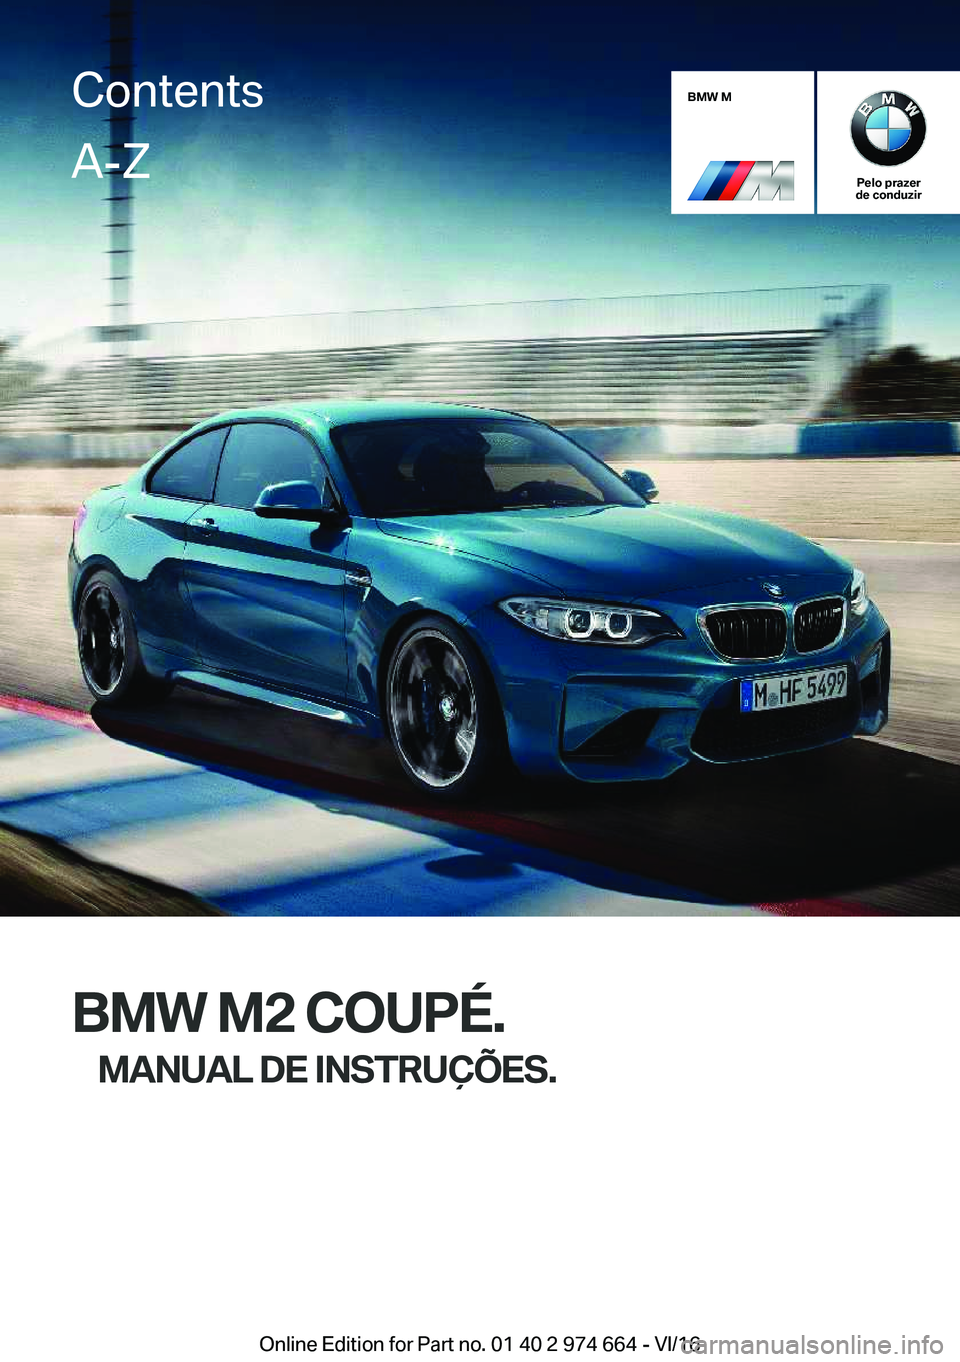 BMW M2 2017  Manual do condutor (in Portuguese) �B�M�W��M
�P�e�l�o��p�r�a�z�e�r
�d�e��c�o�n�d�u�z�i�r
�B�M�W��M�2��C�O�U�P�